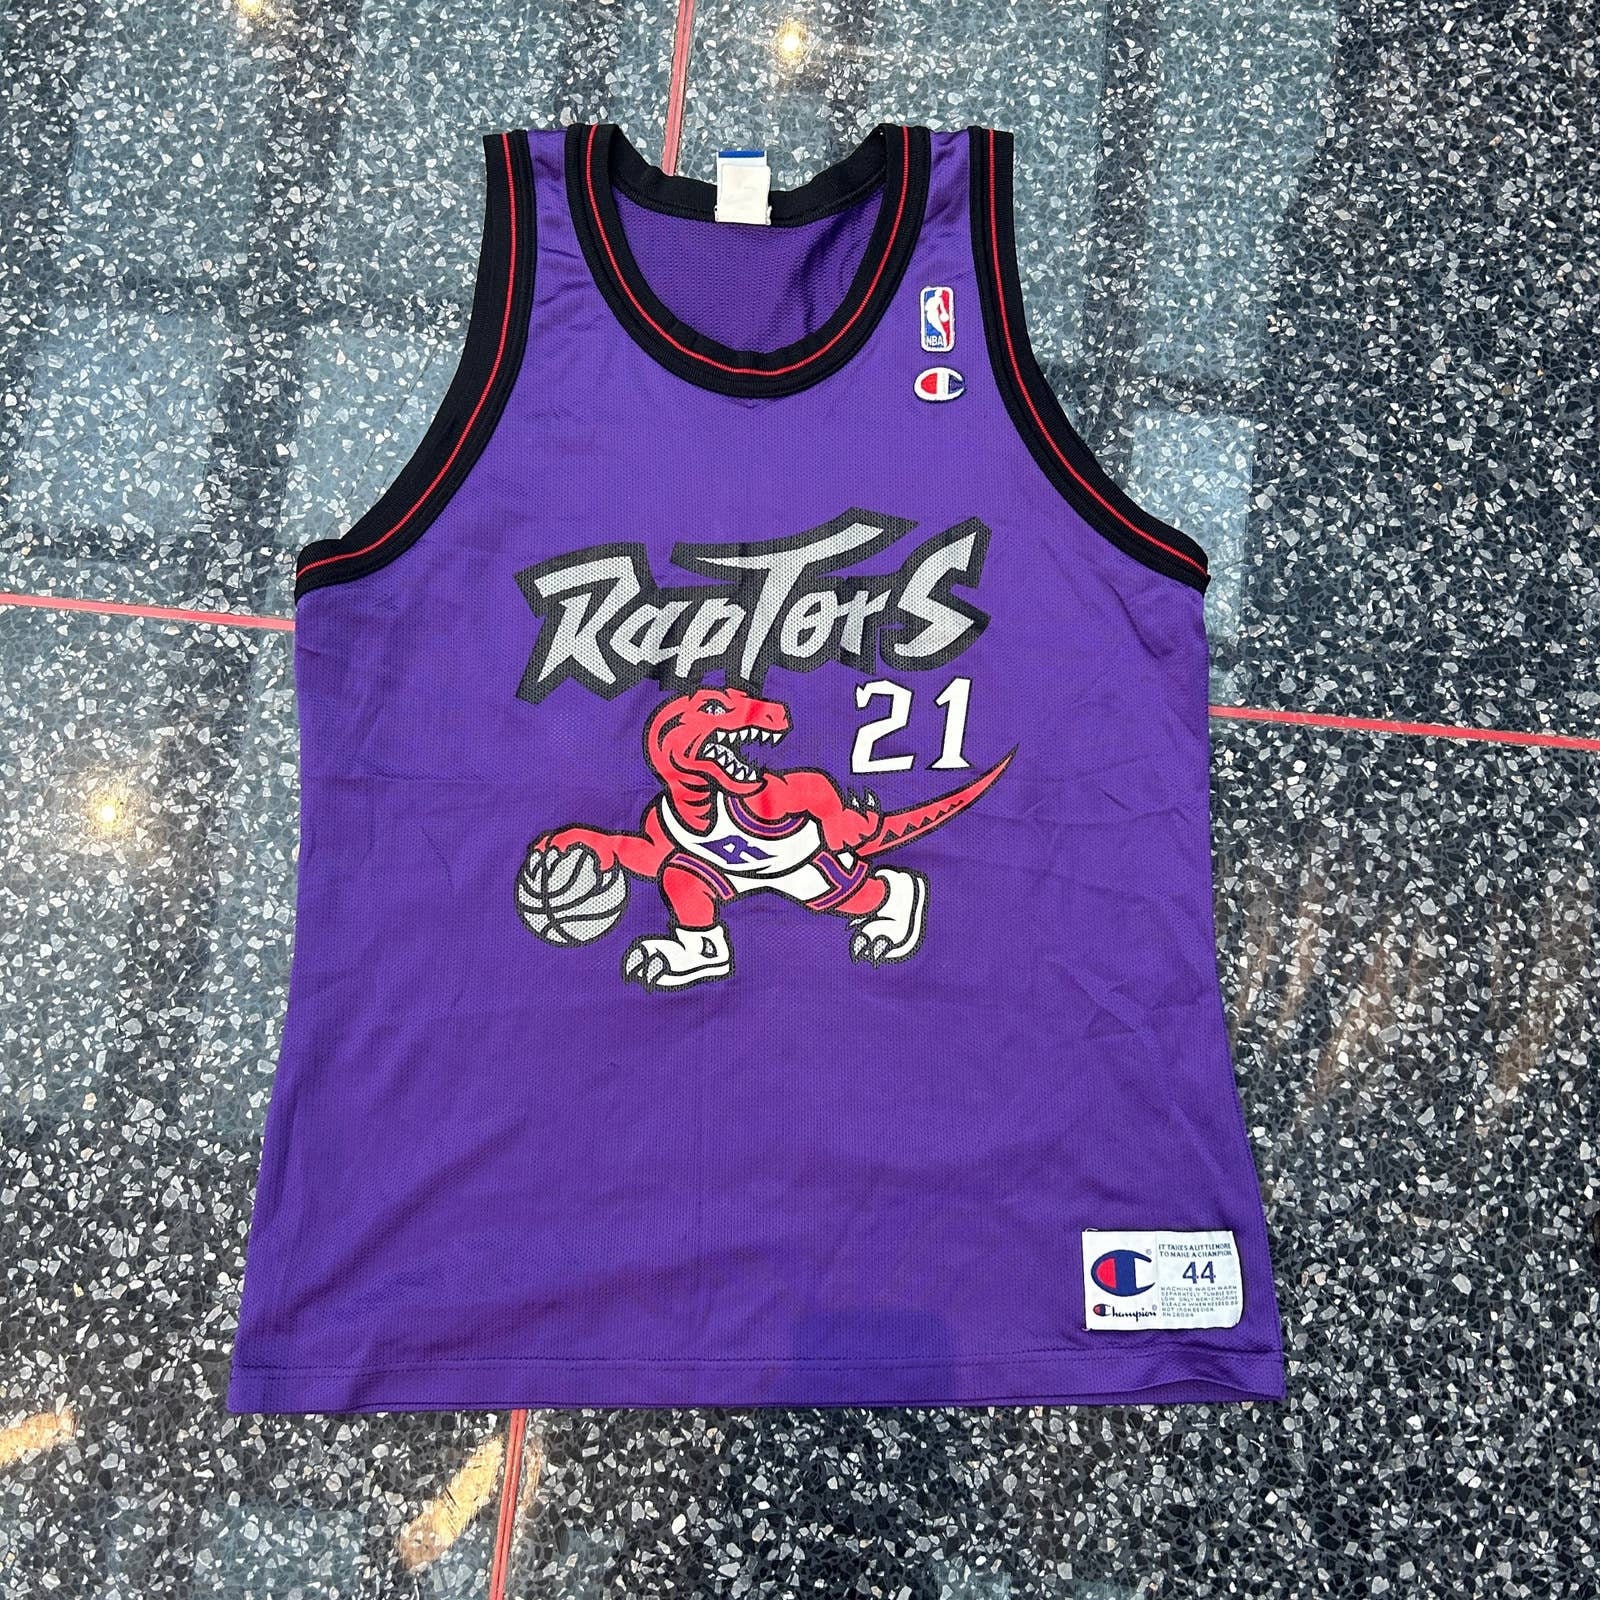 Vintage 90s Toronto Raptors Pro Cut Authentic Jersey 